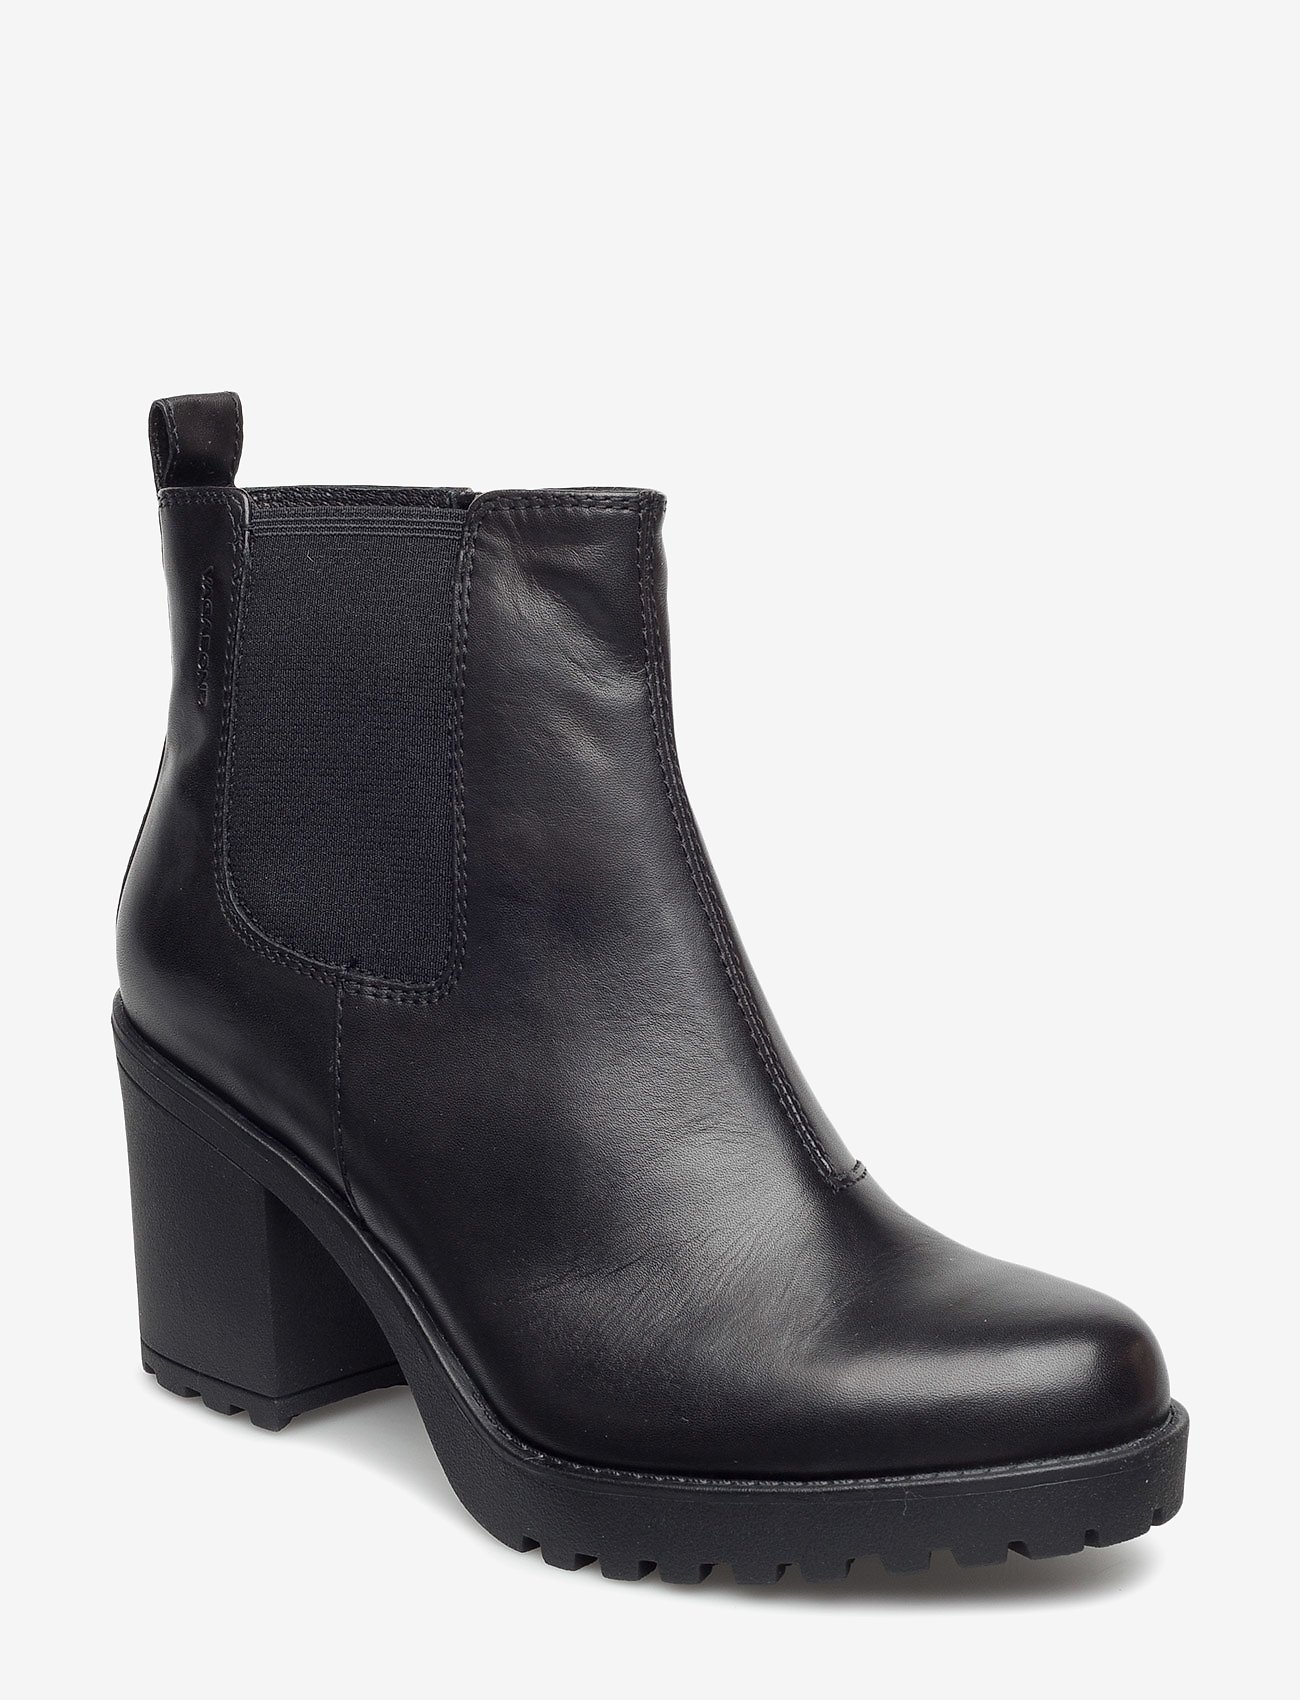 vagabond grace leather boots